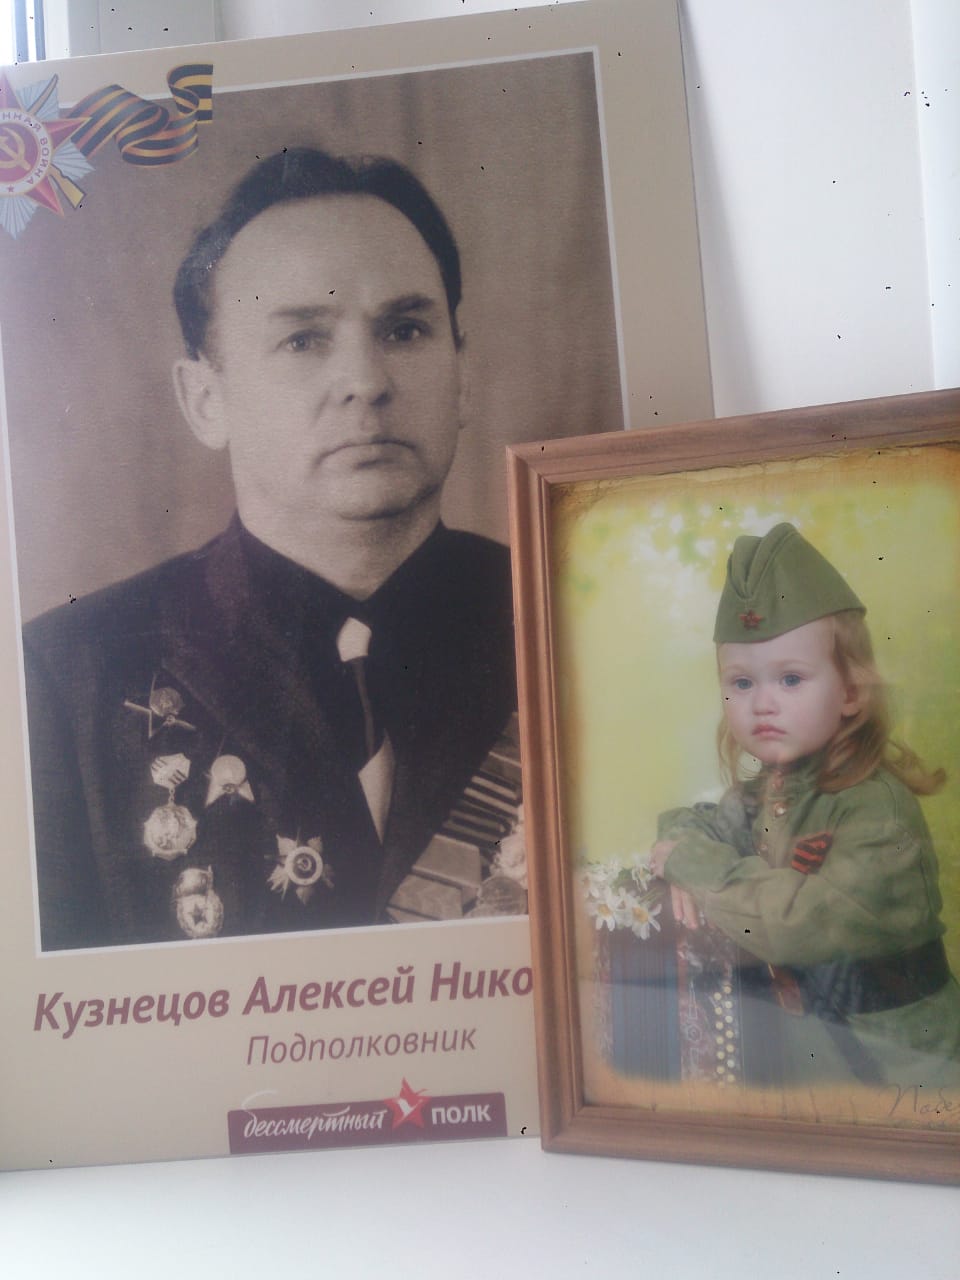 Емцева Аня с портретом прадедушки Кузнецова А.Н.